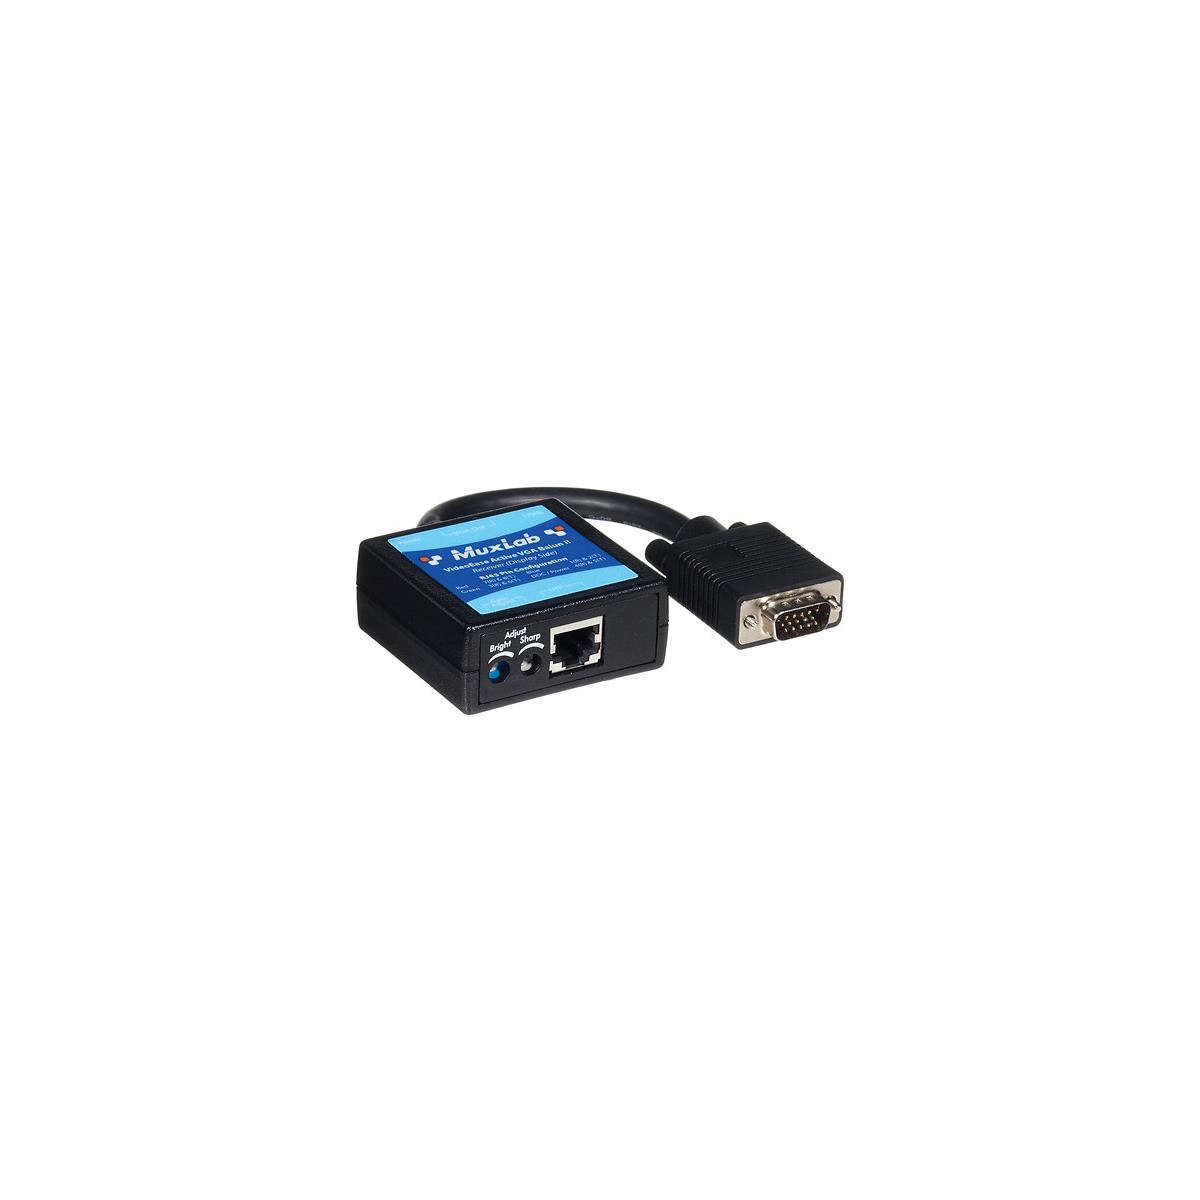 Muxlab Active VGA Balun II Receiver, No Power -  500142